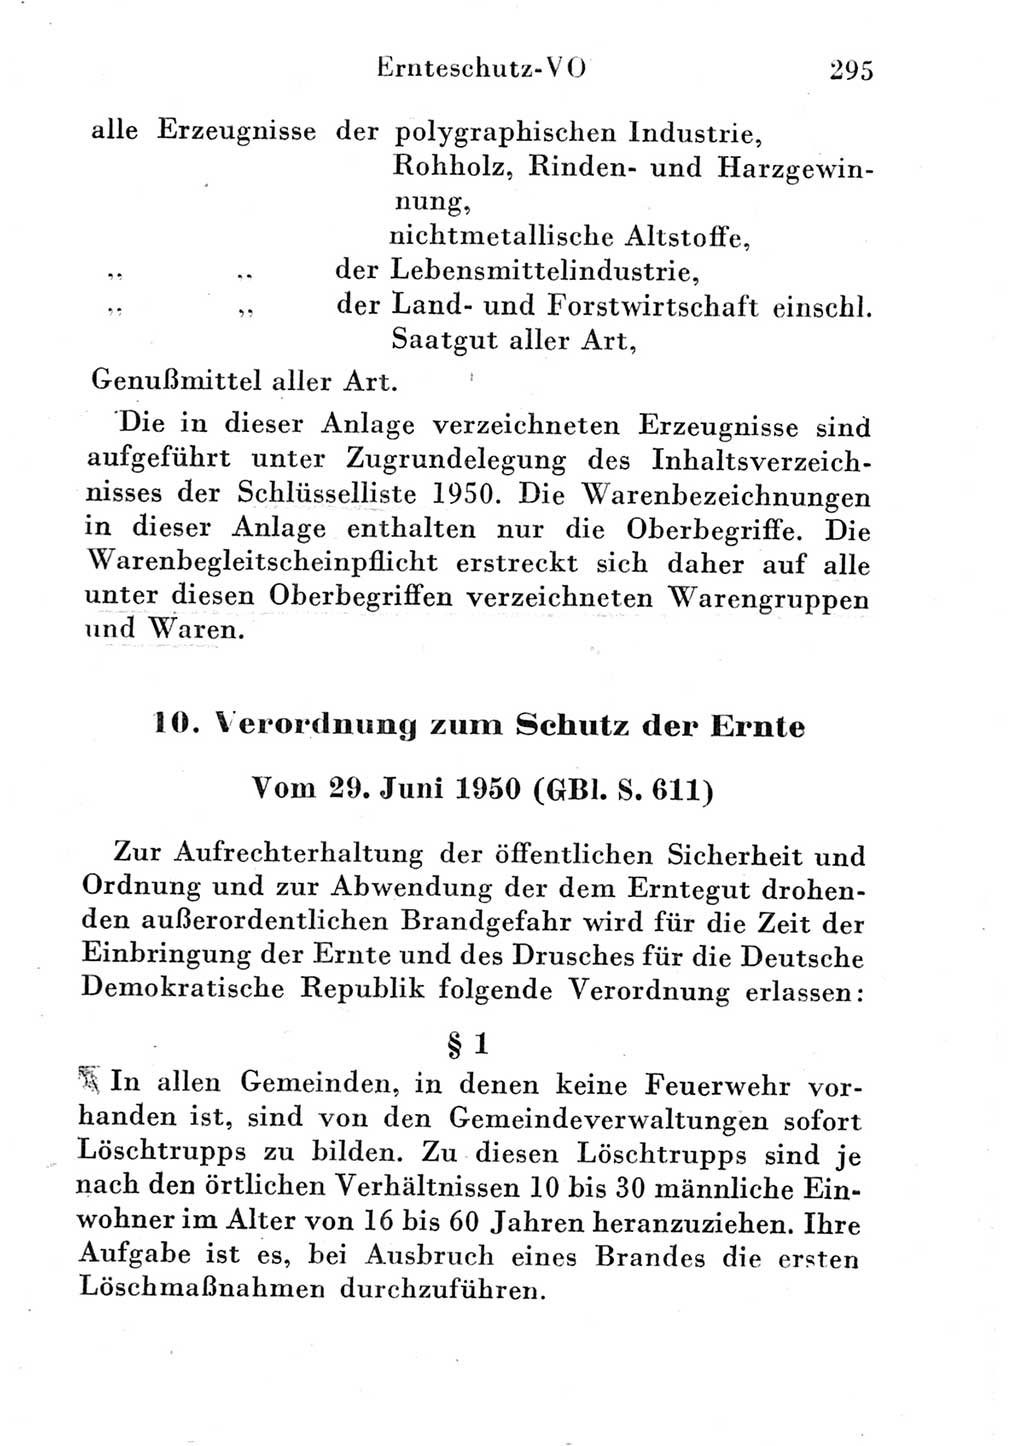 Strafgesetzbuch (StGB) und andere Strafgesetze [Deutsche Demokratische Republik (DDR)] 1951, Seite 295 (StGB Strafges. DDR 1951, S. 295)